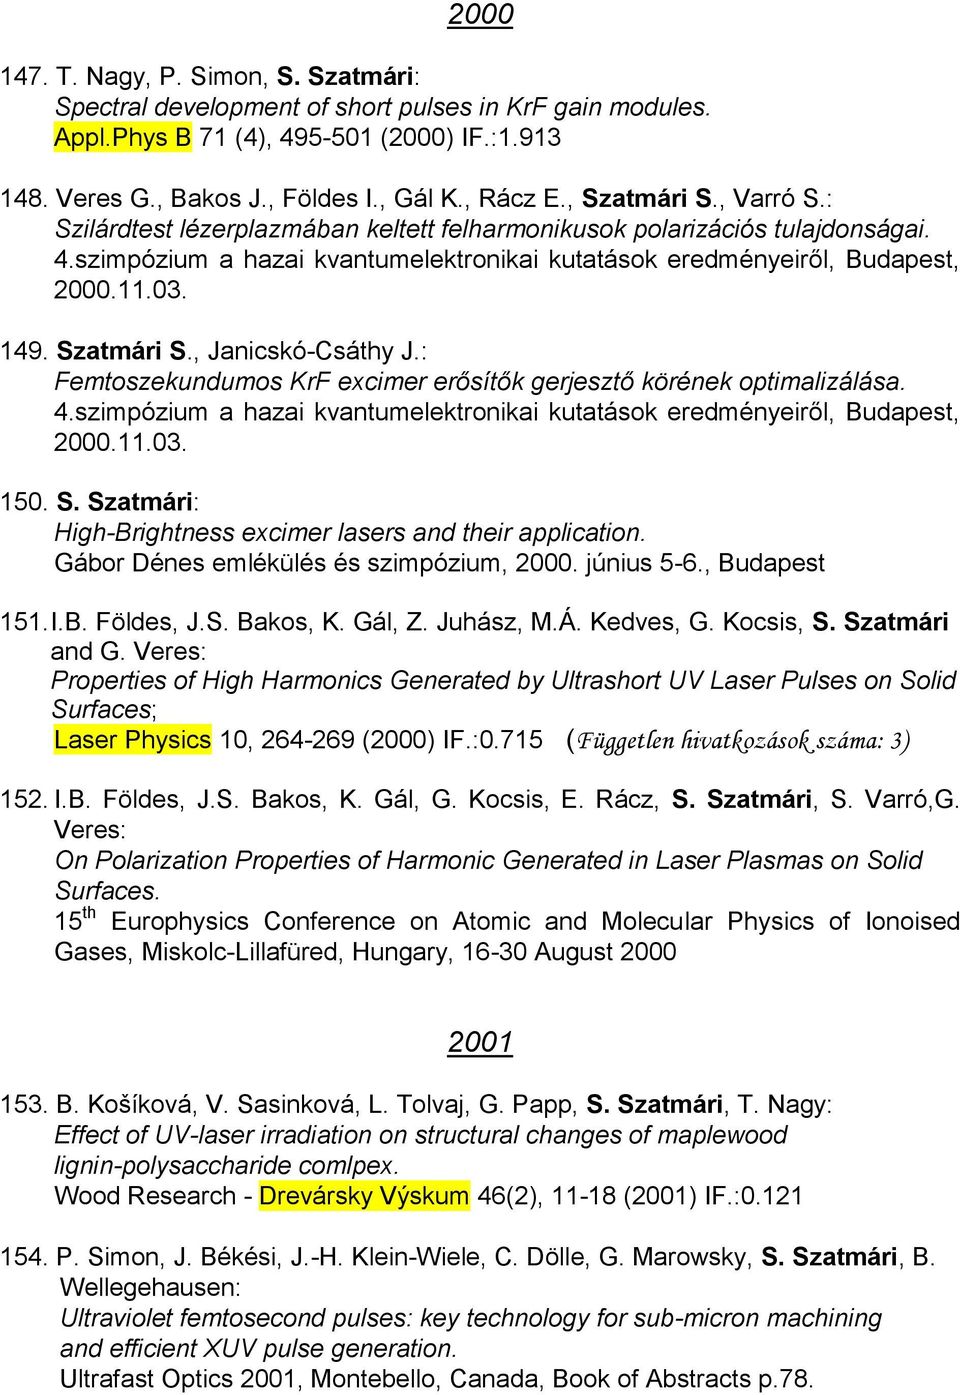 Szatmári S., Janicskó-Csáthy J.: Femtoszekundumos KrF excimer erősítők gerjesztő körének optimalizálása. 4.szimpózium a hazai kvantumelektronikai kutatások eredményeiről, Budapest, 2000.11.03. 150. S. Szatmári: High-Brightness excimer lasers and their application.